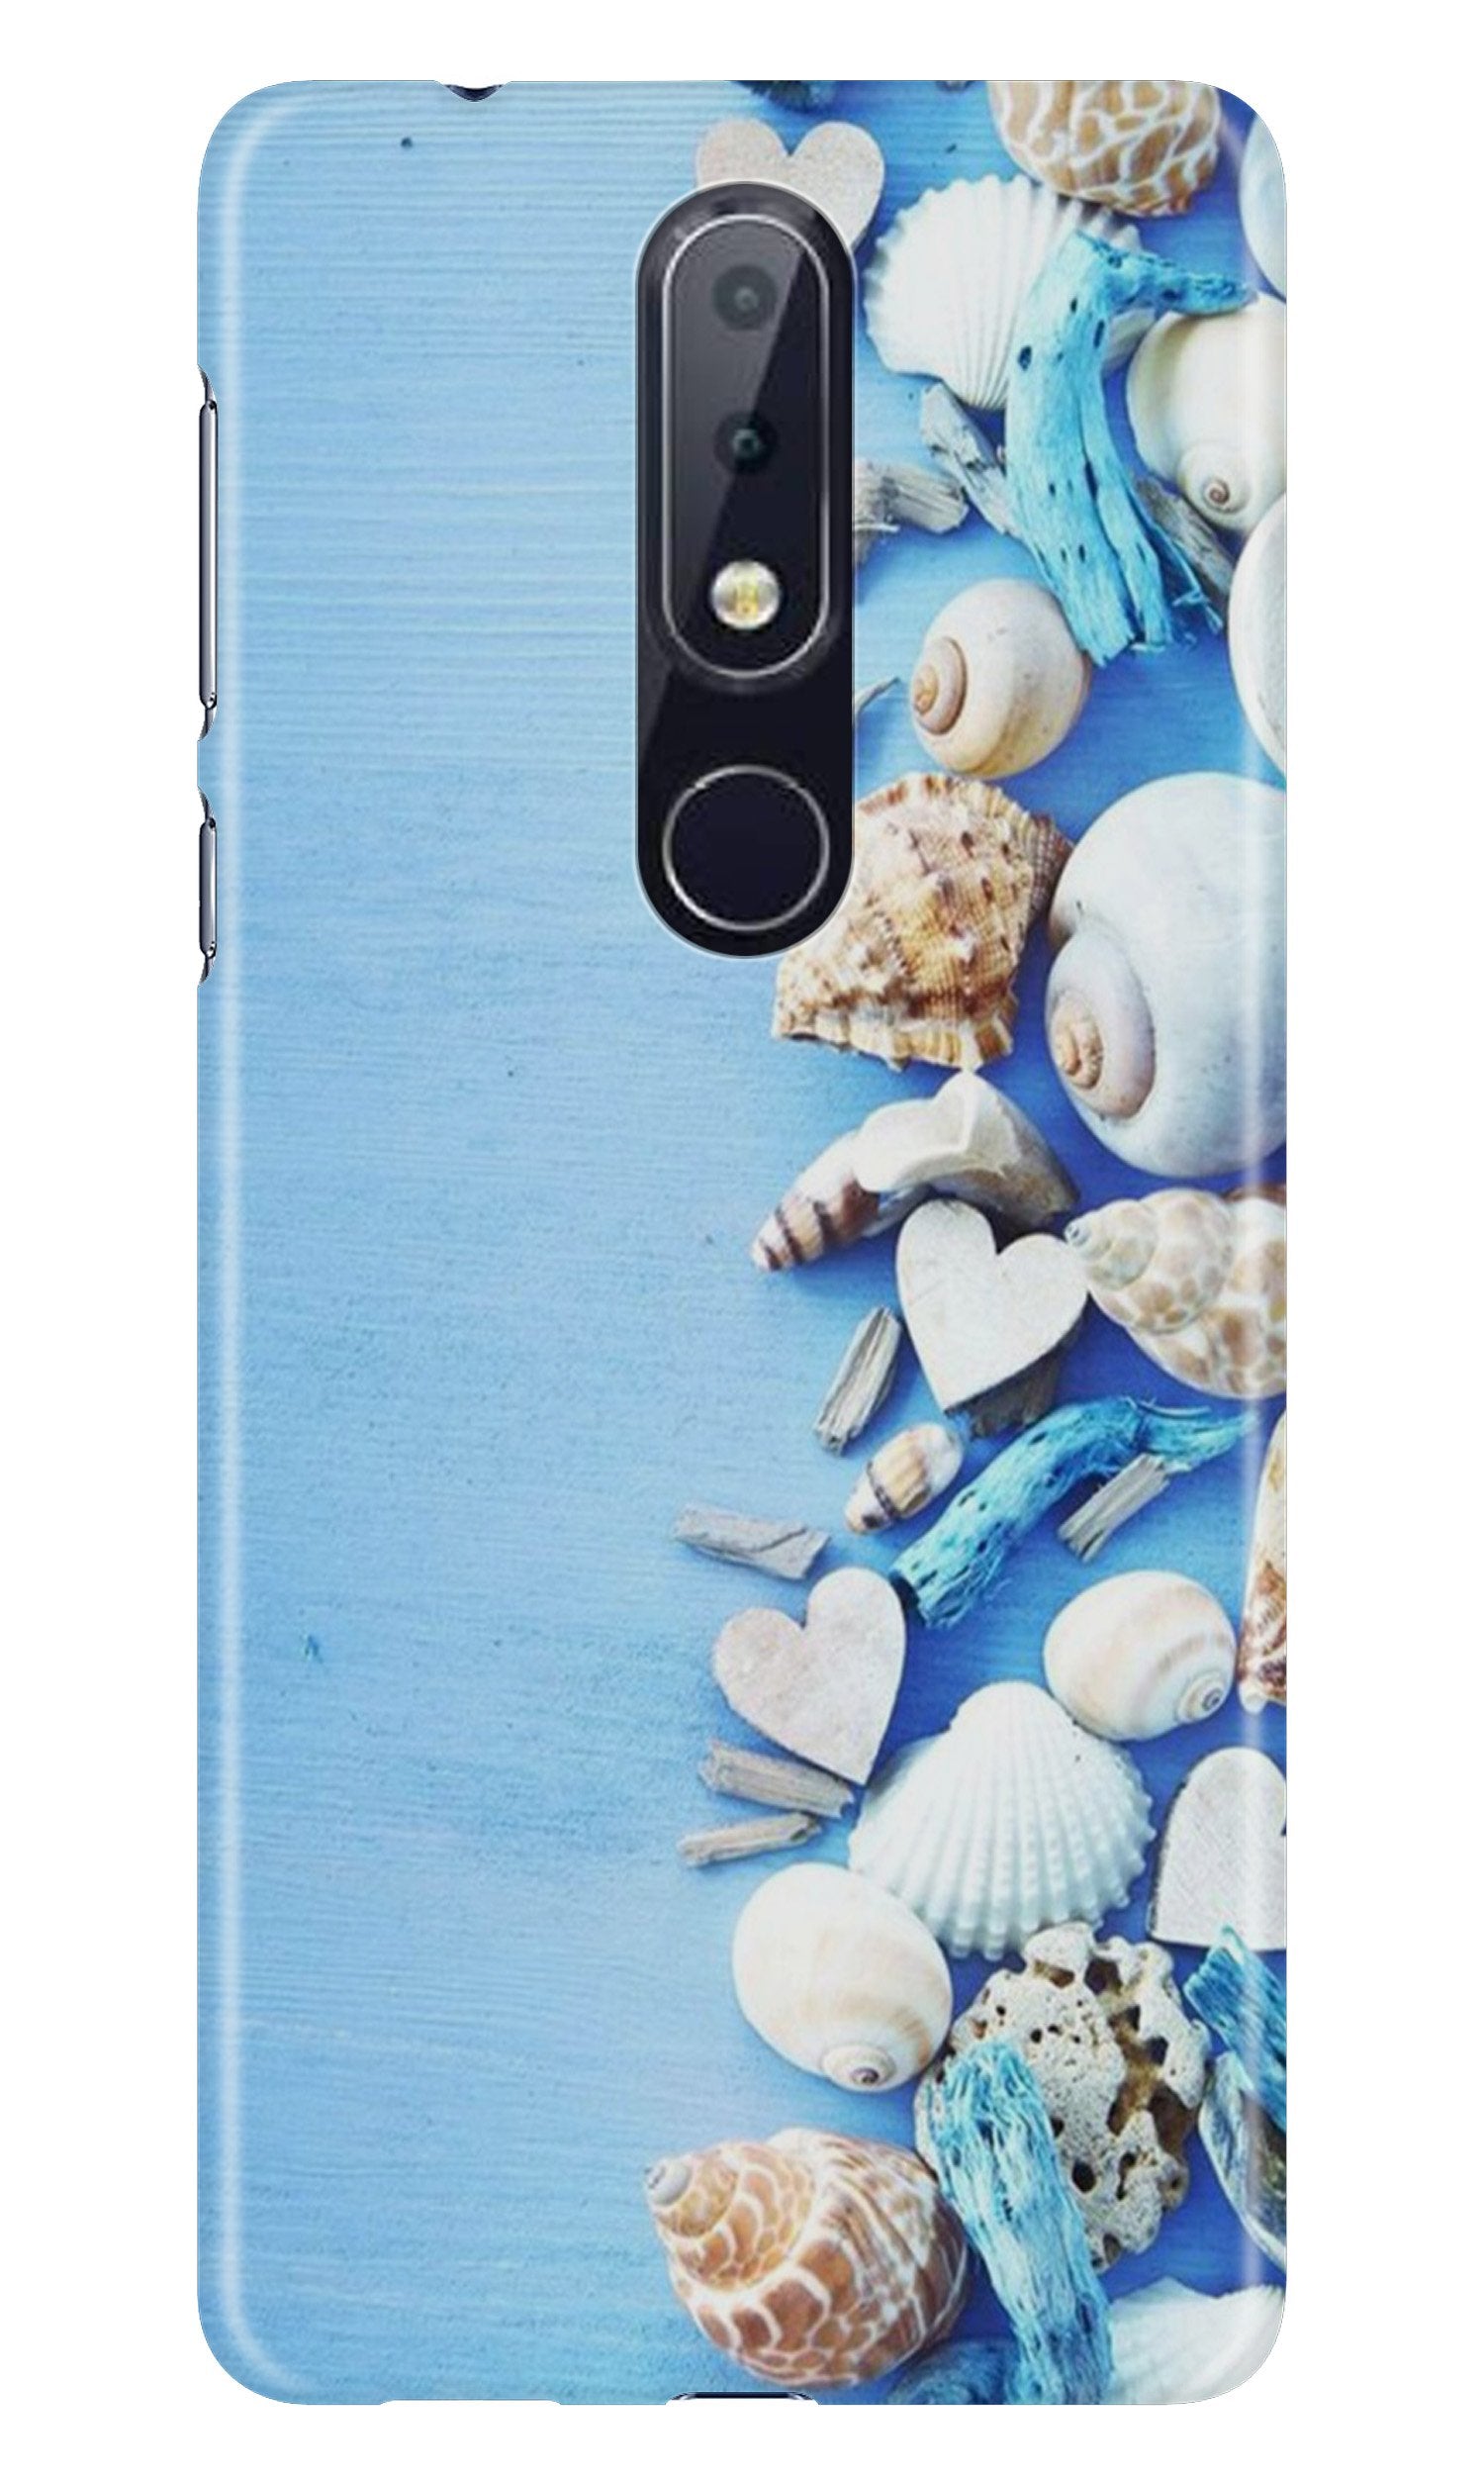 Sea Shells2 Case for Nokia 6.1 Plus